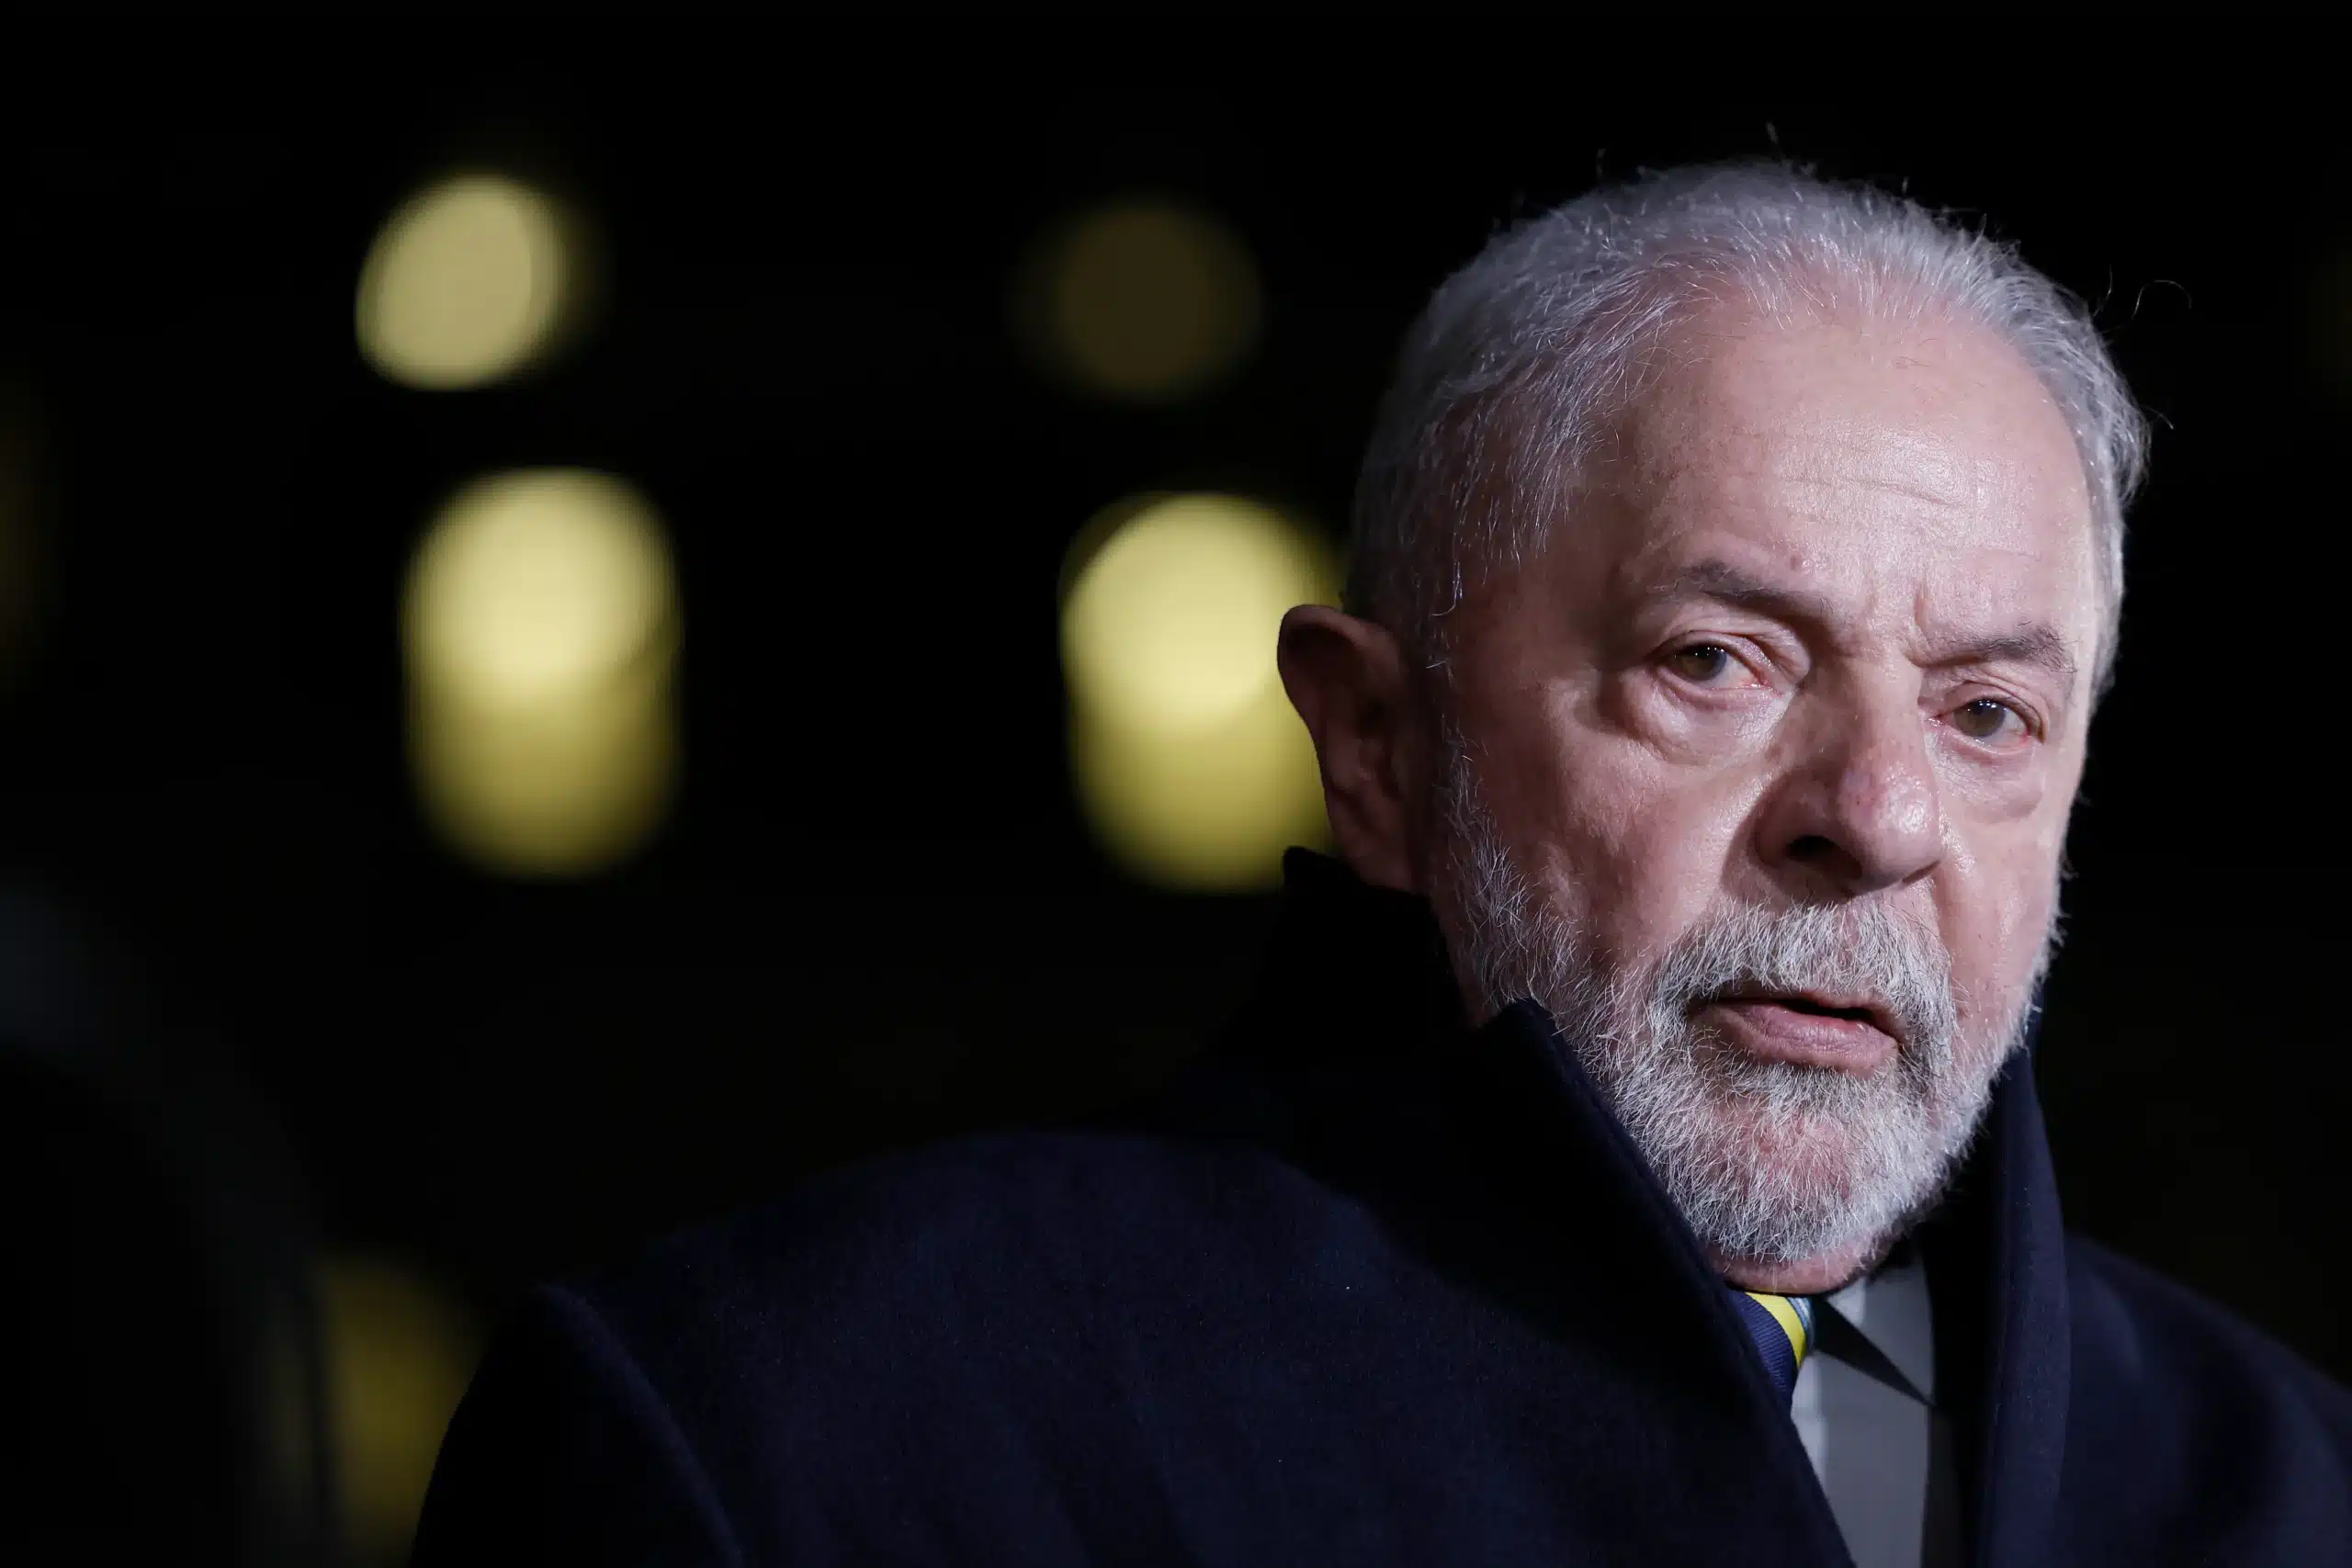 Mudanca na Pericia Medica Presidente Lula Sanciona Lei da Telepericia scaled